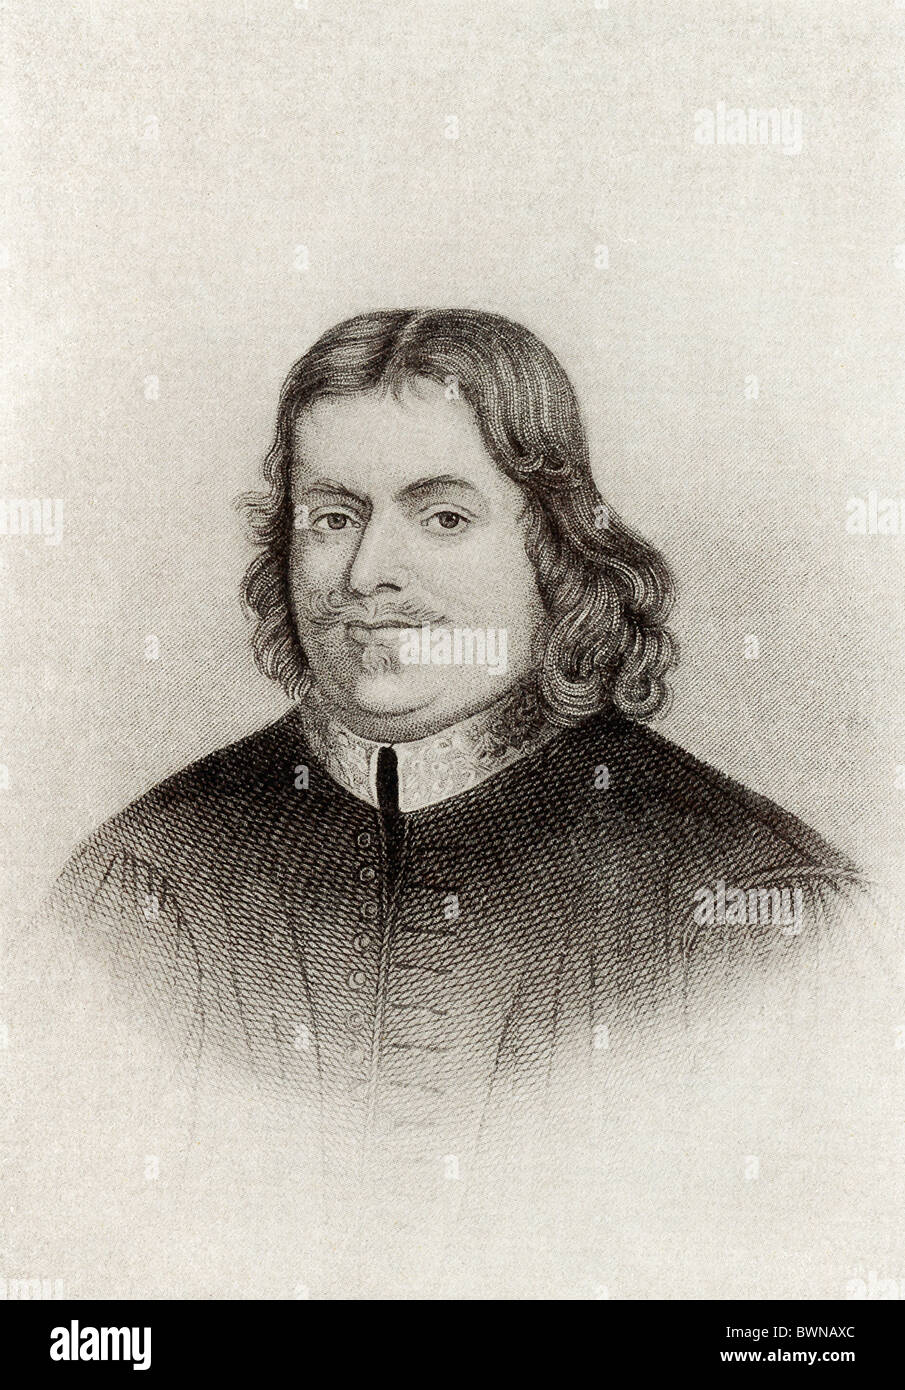 Une réforme, Baptiste John Bunyan (1628-1688) était un écrivain et prédicateur connu pour son travail 'Pilgrim's Progress". Banque D'Images